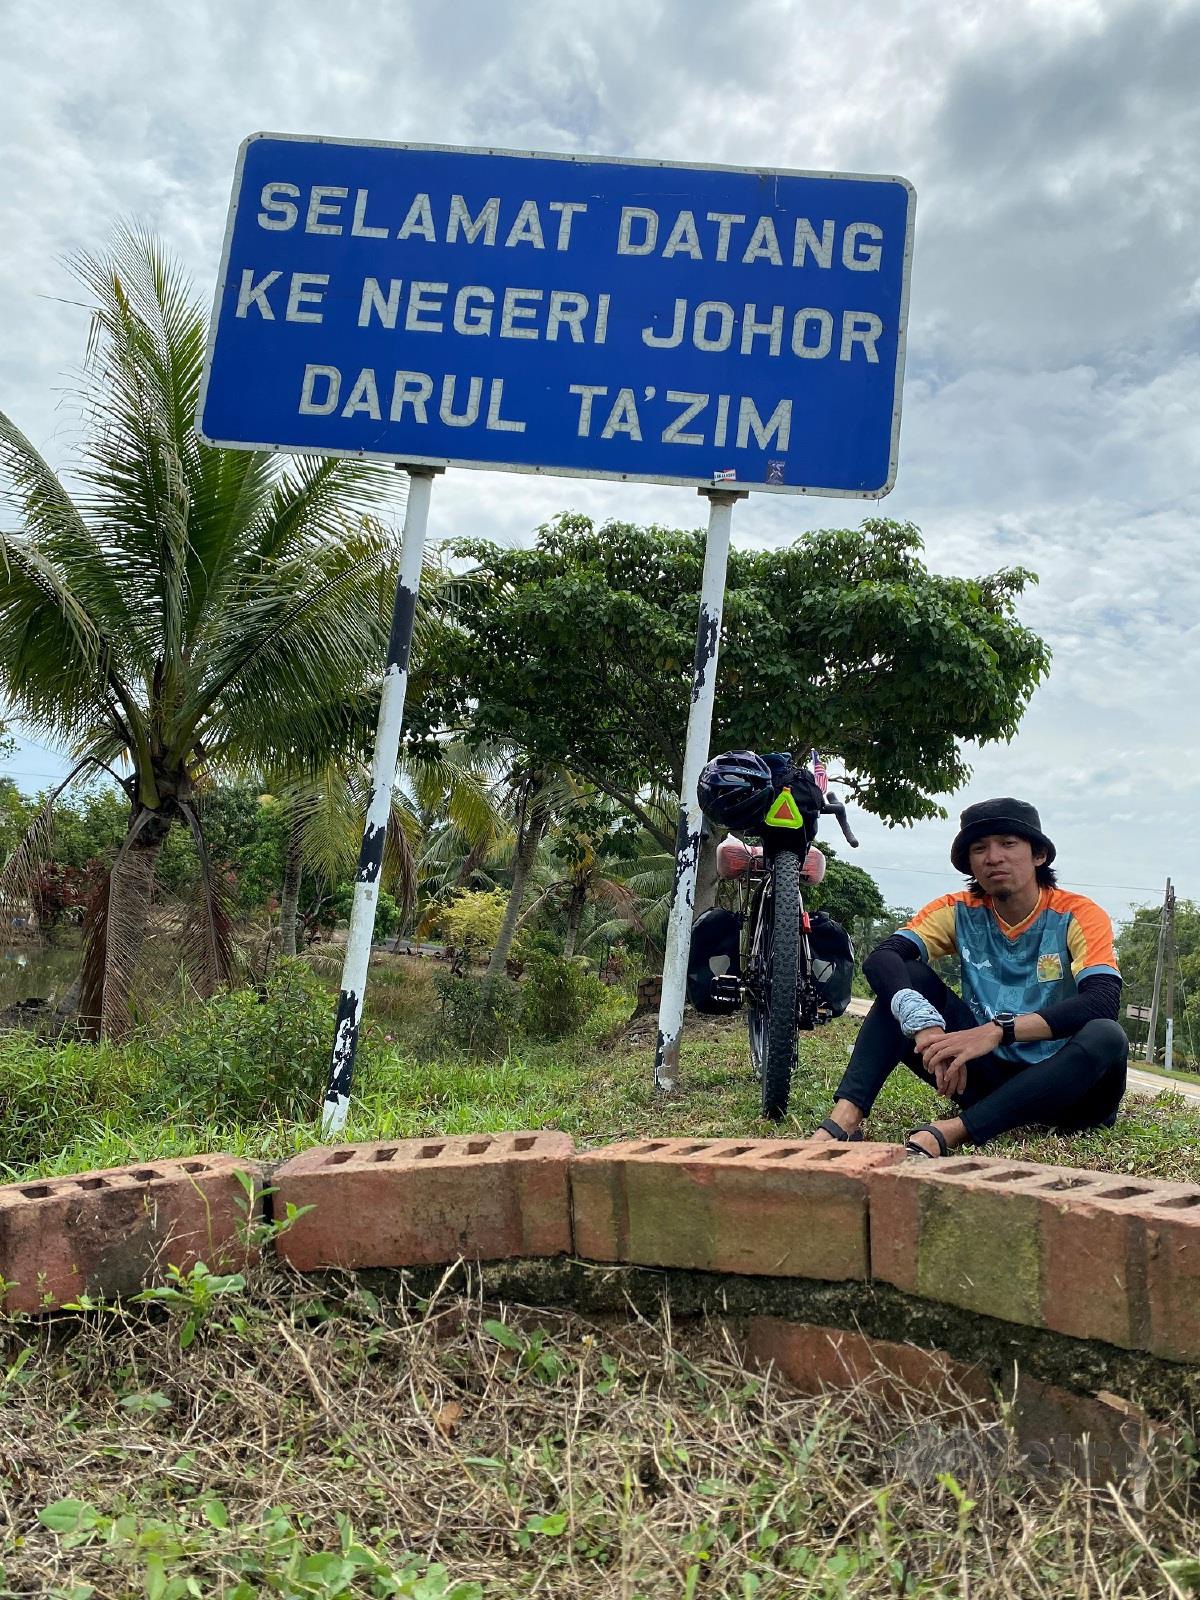 MEMASUKI sempadan Johor pada hari ketujuh ekspedisi.